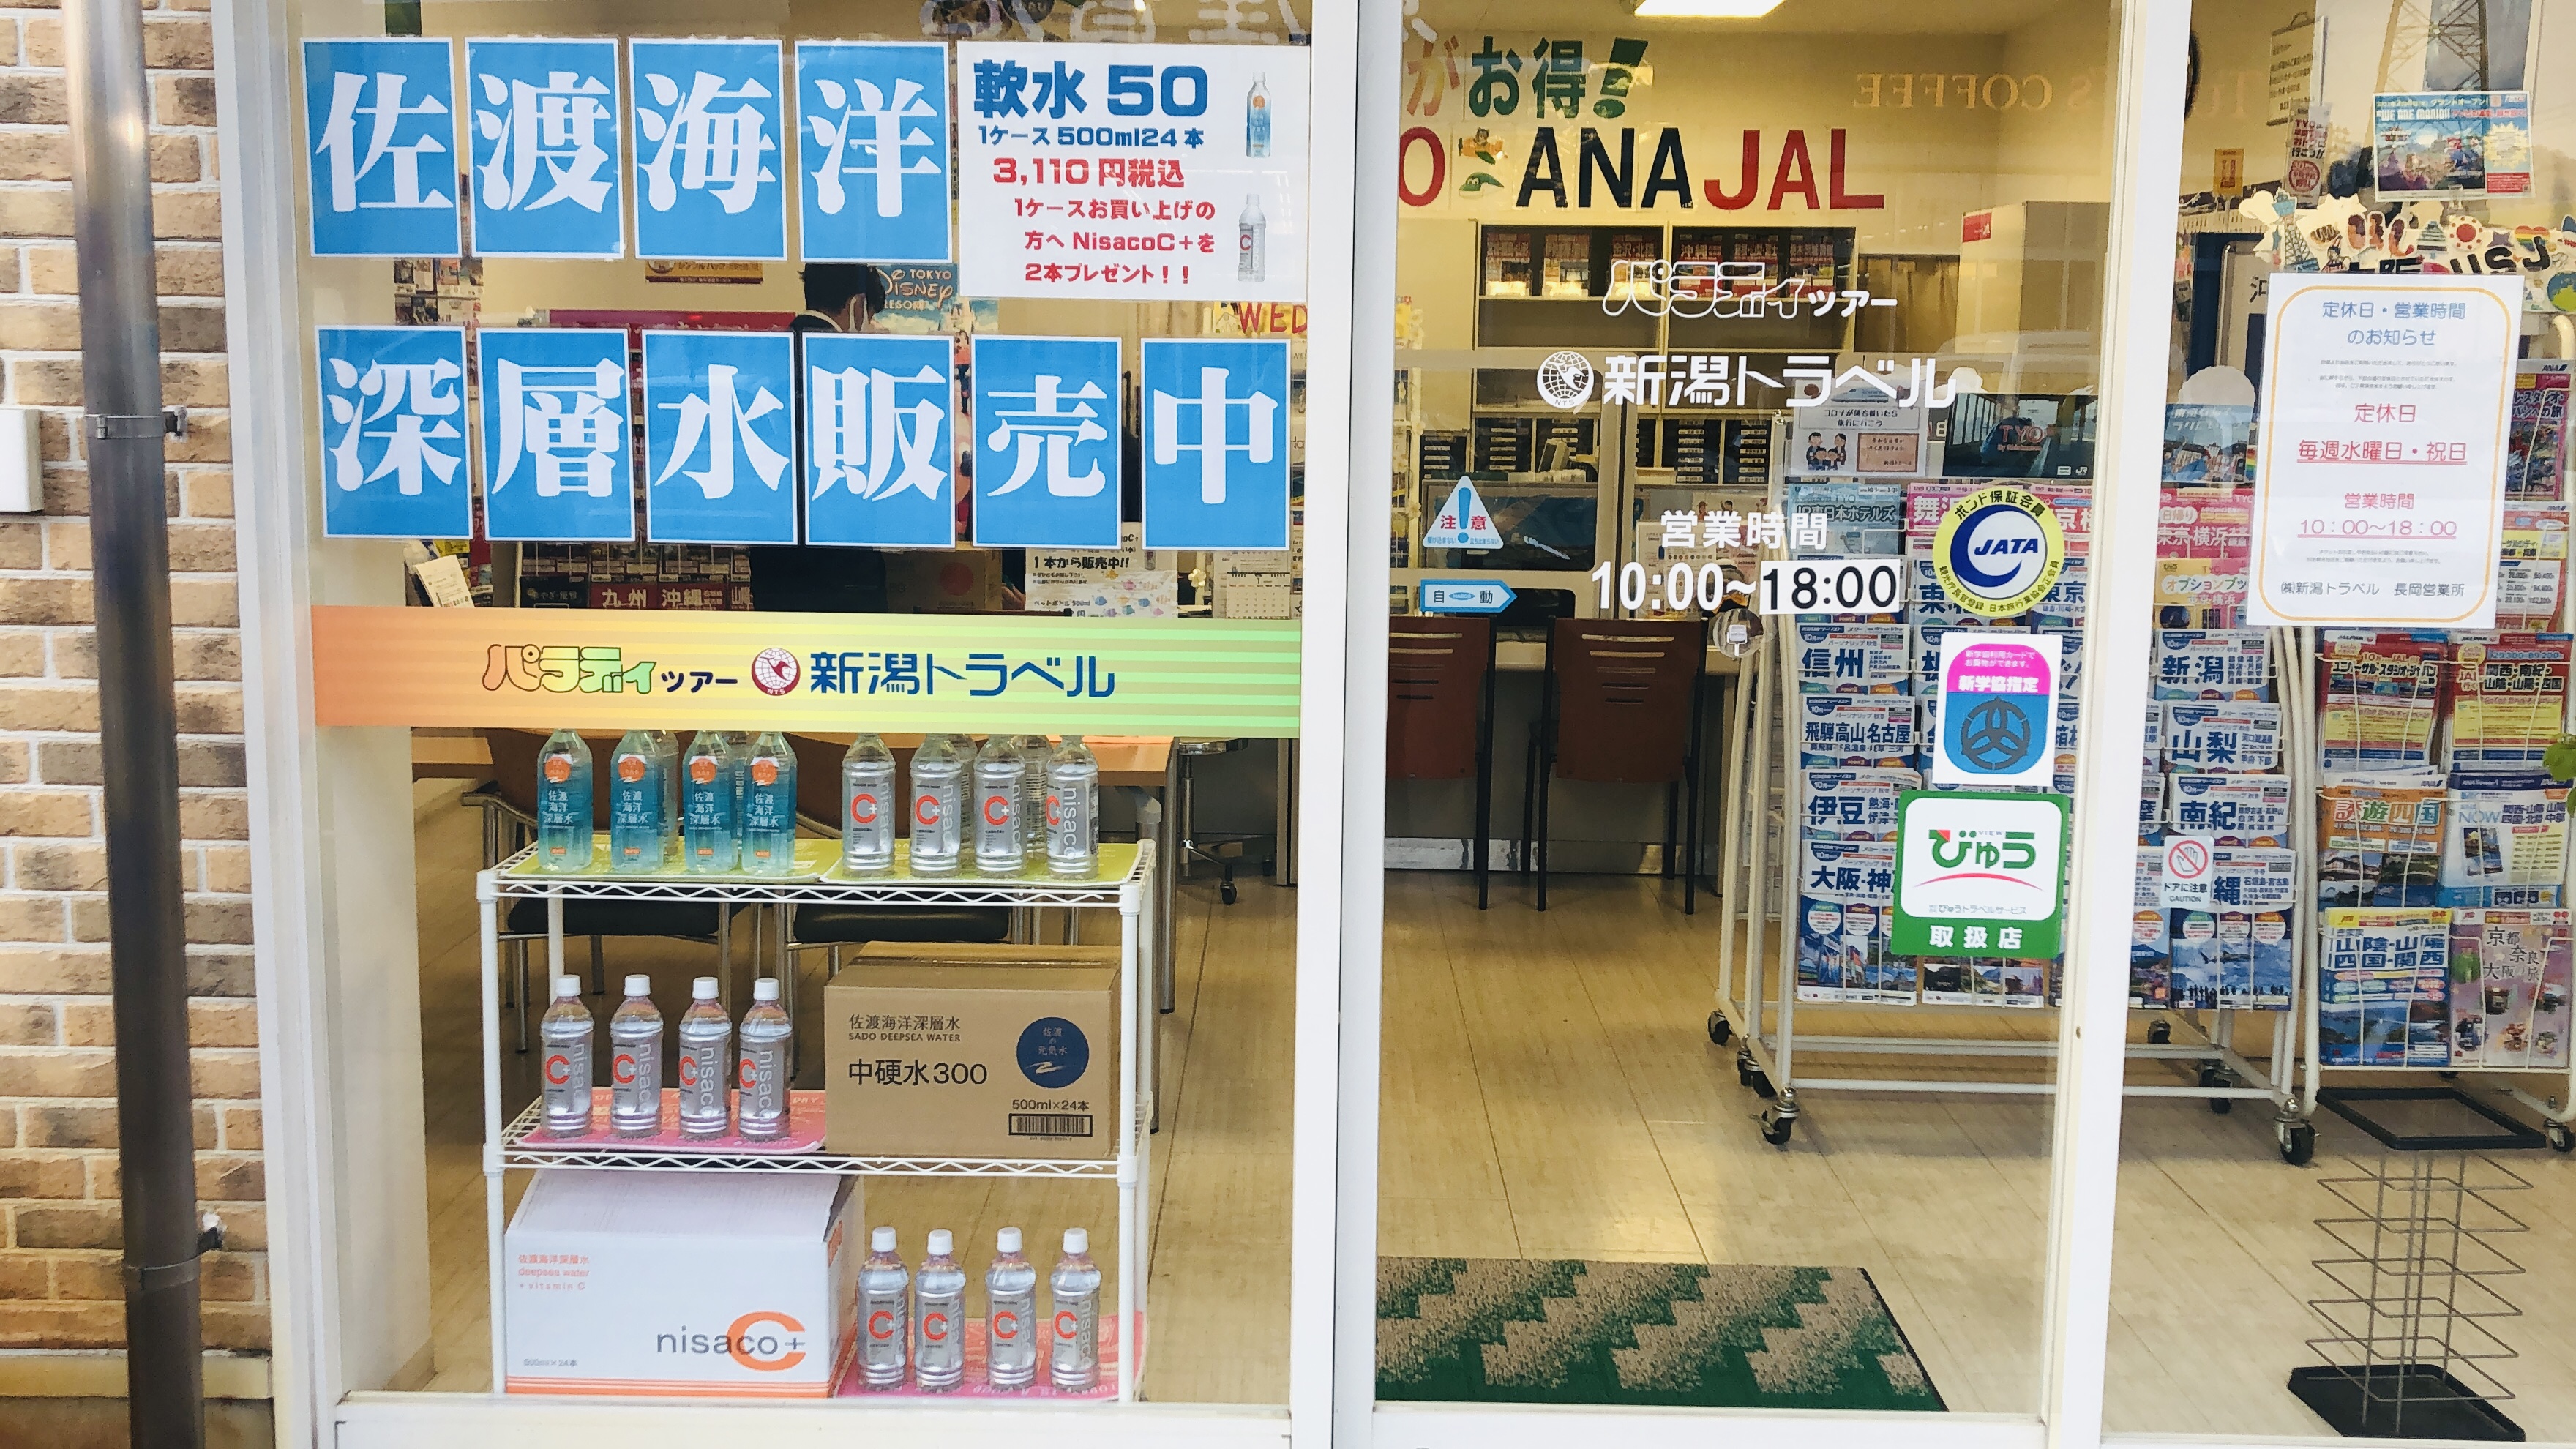 佐渡海洋深層水を新潟県内の4店舗(新潟、三条、長岡、上越)で販売開始!